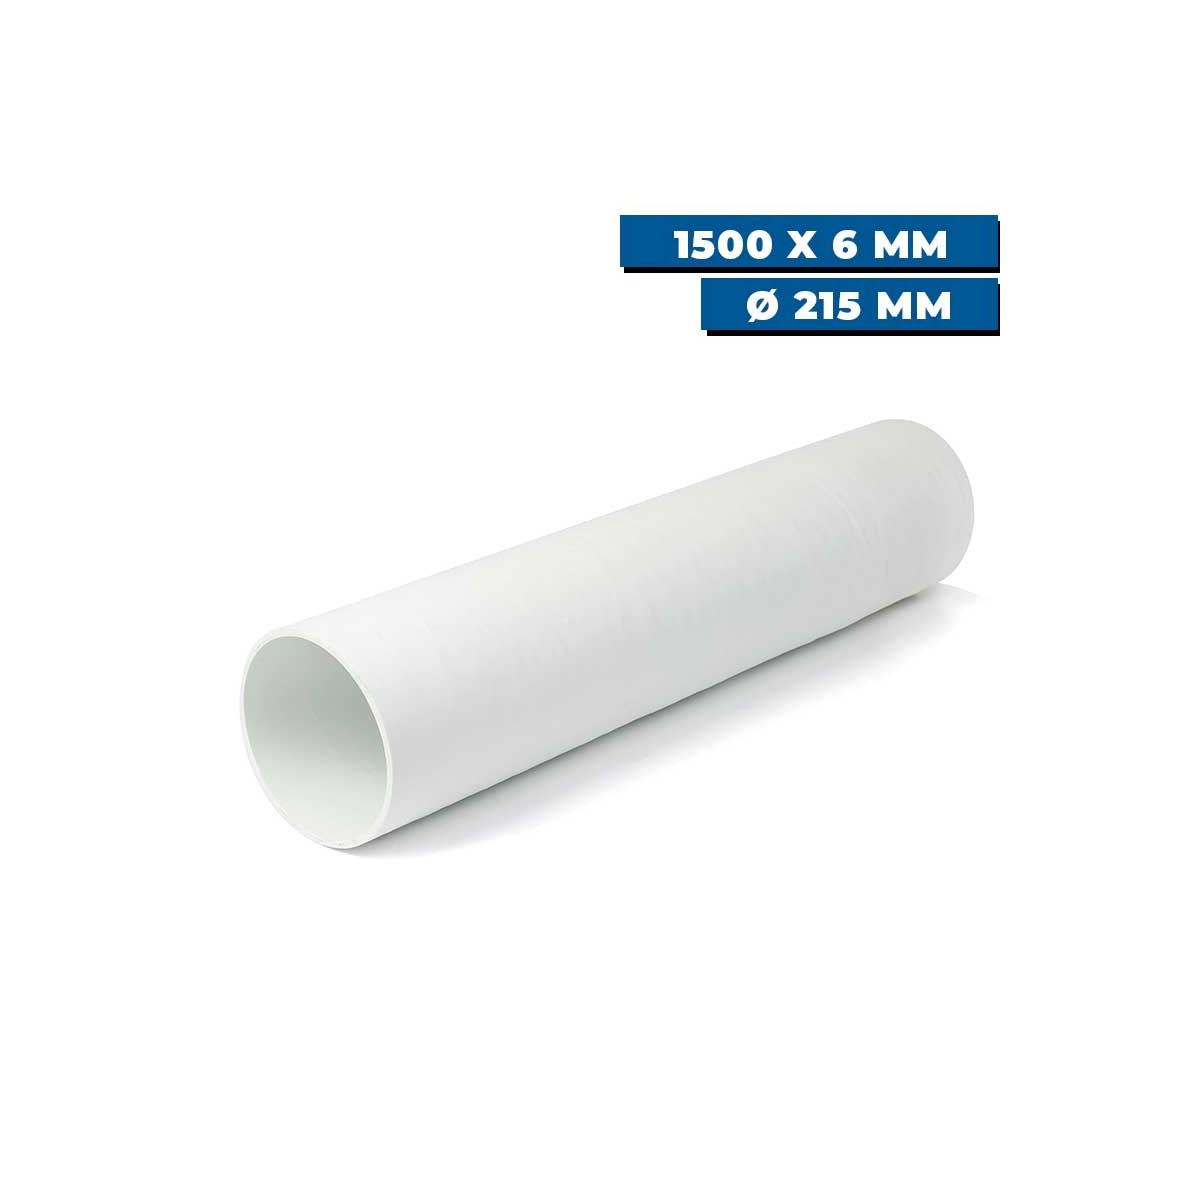 Tunnel polyester pour propulseur Ø 215 mm Sleipner 1500 x 6 mm